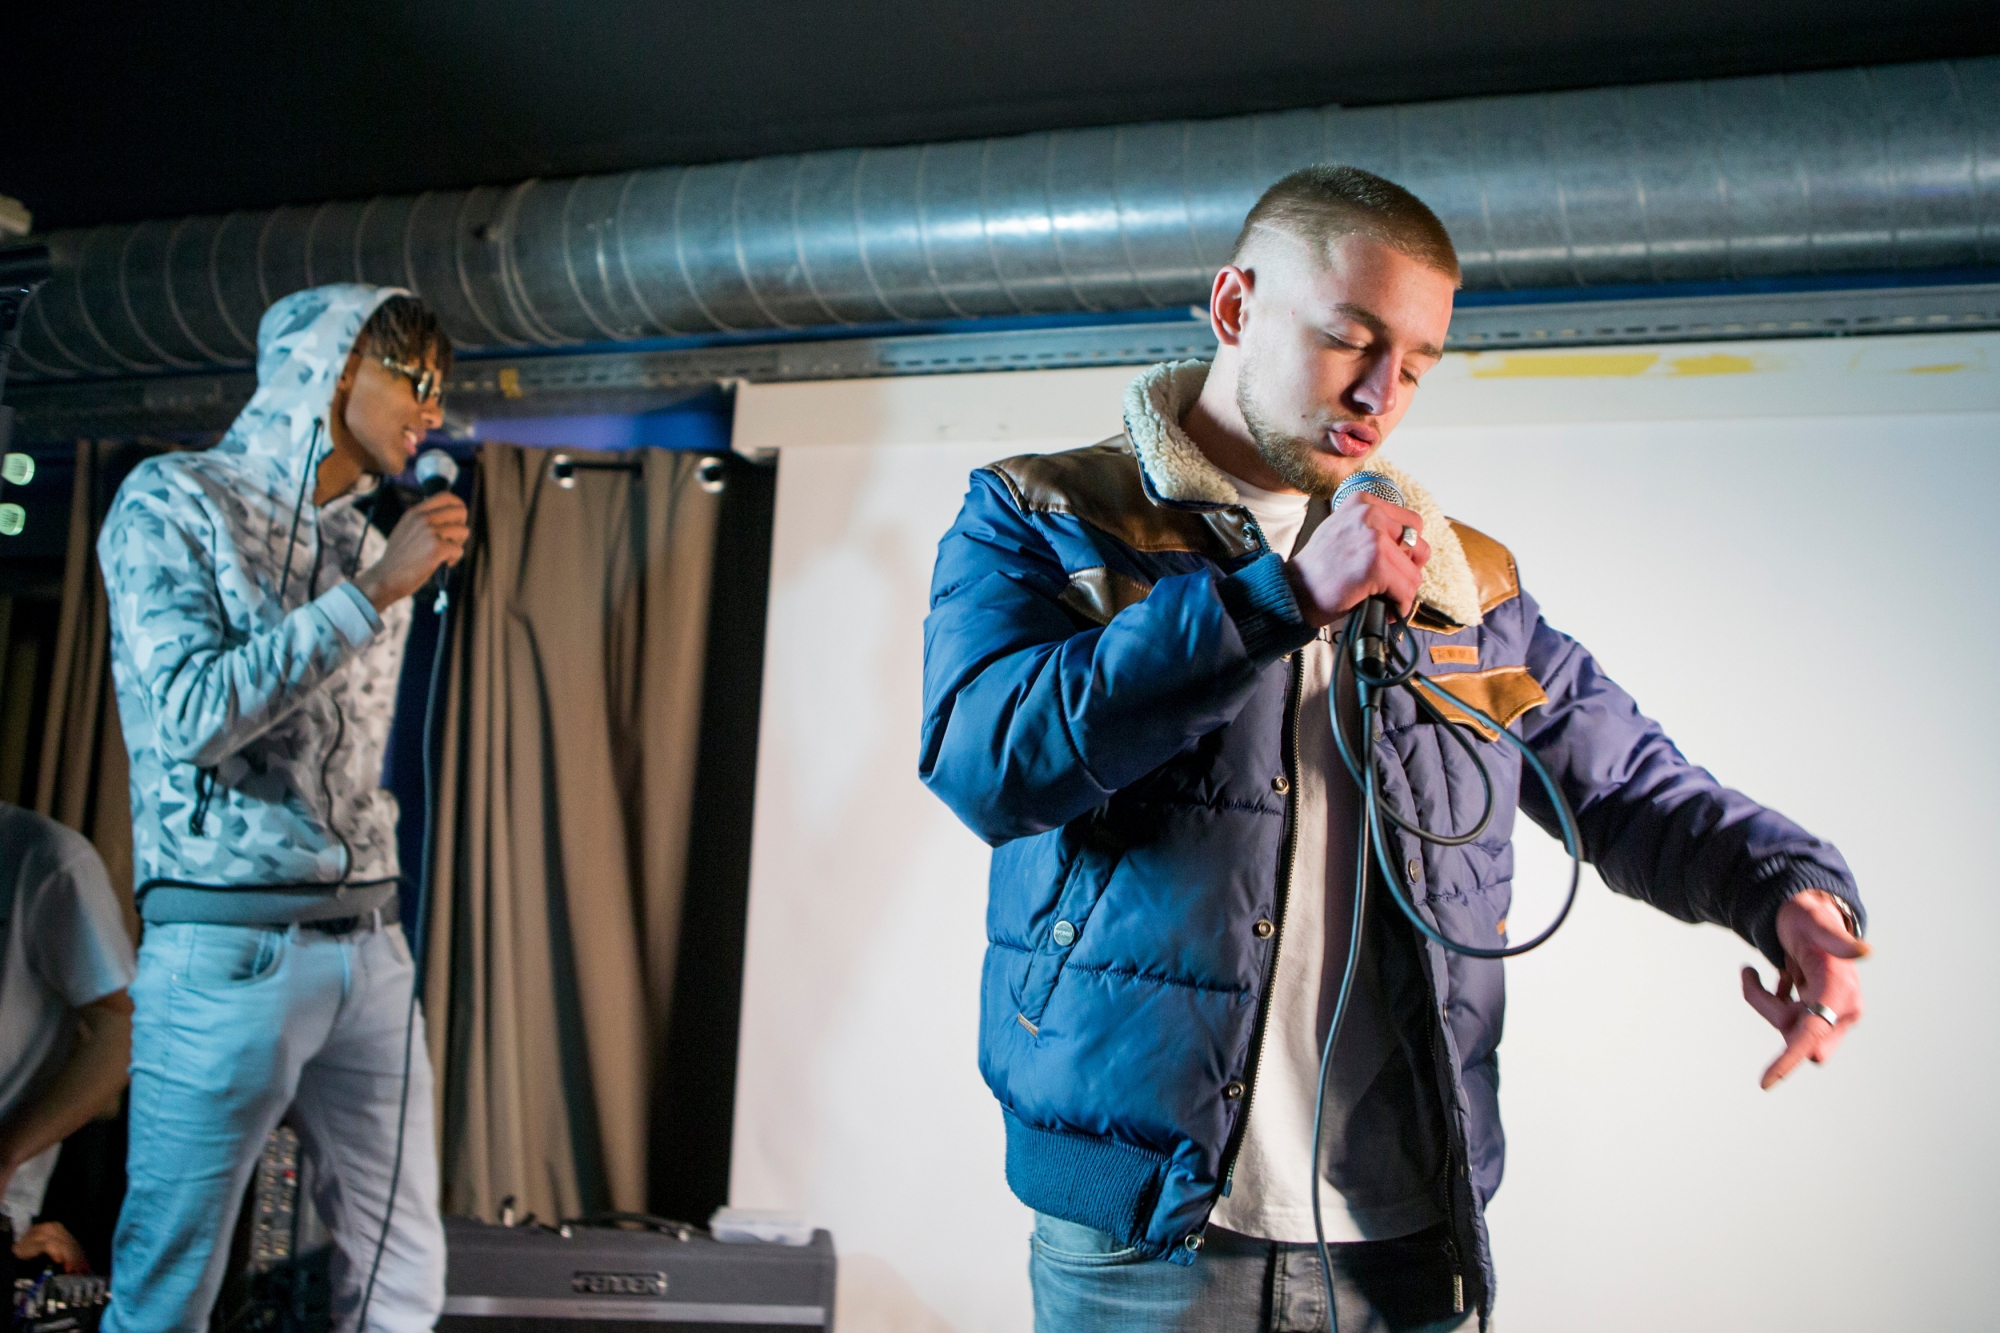 Le groupe de rap ALG Crew sera l'une des formations de jeunes artistes de la région à se produire sur scène.